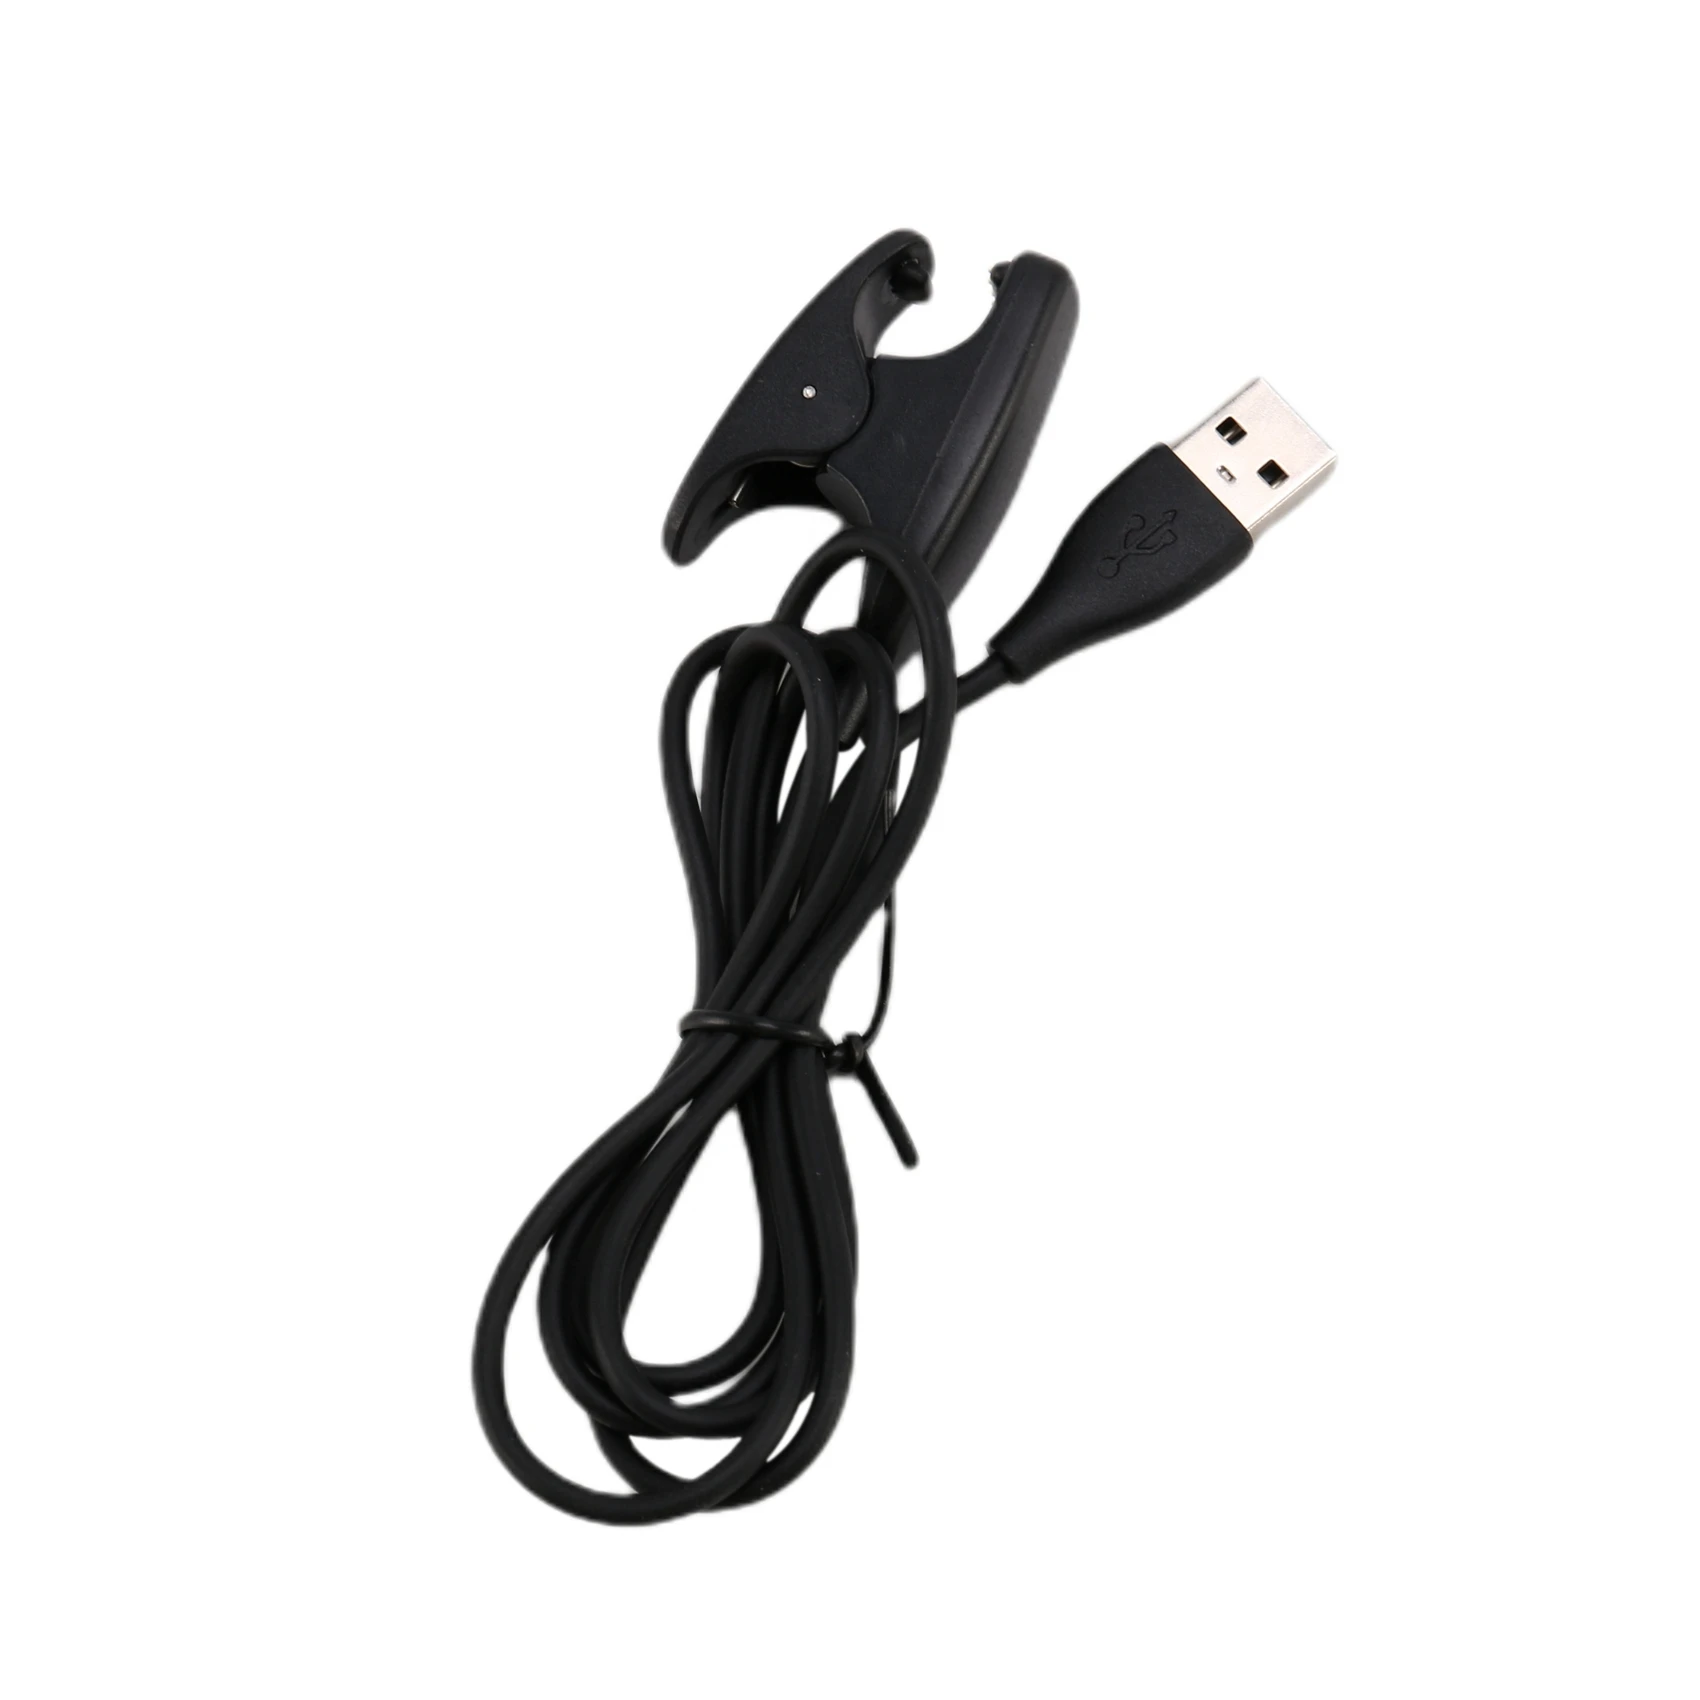 3.3 Ft Cablu de Încărcare USB Cradle Dock Încărcător pentru Suunto 3 de Fitness,Suunto 5,Domeniul 1 2 3,Traverse,Kailash,Spartan Antrenor - 0